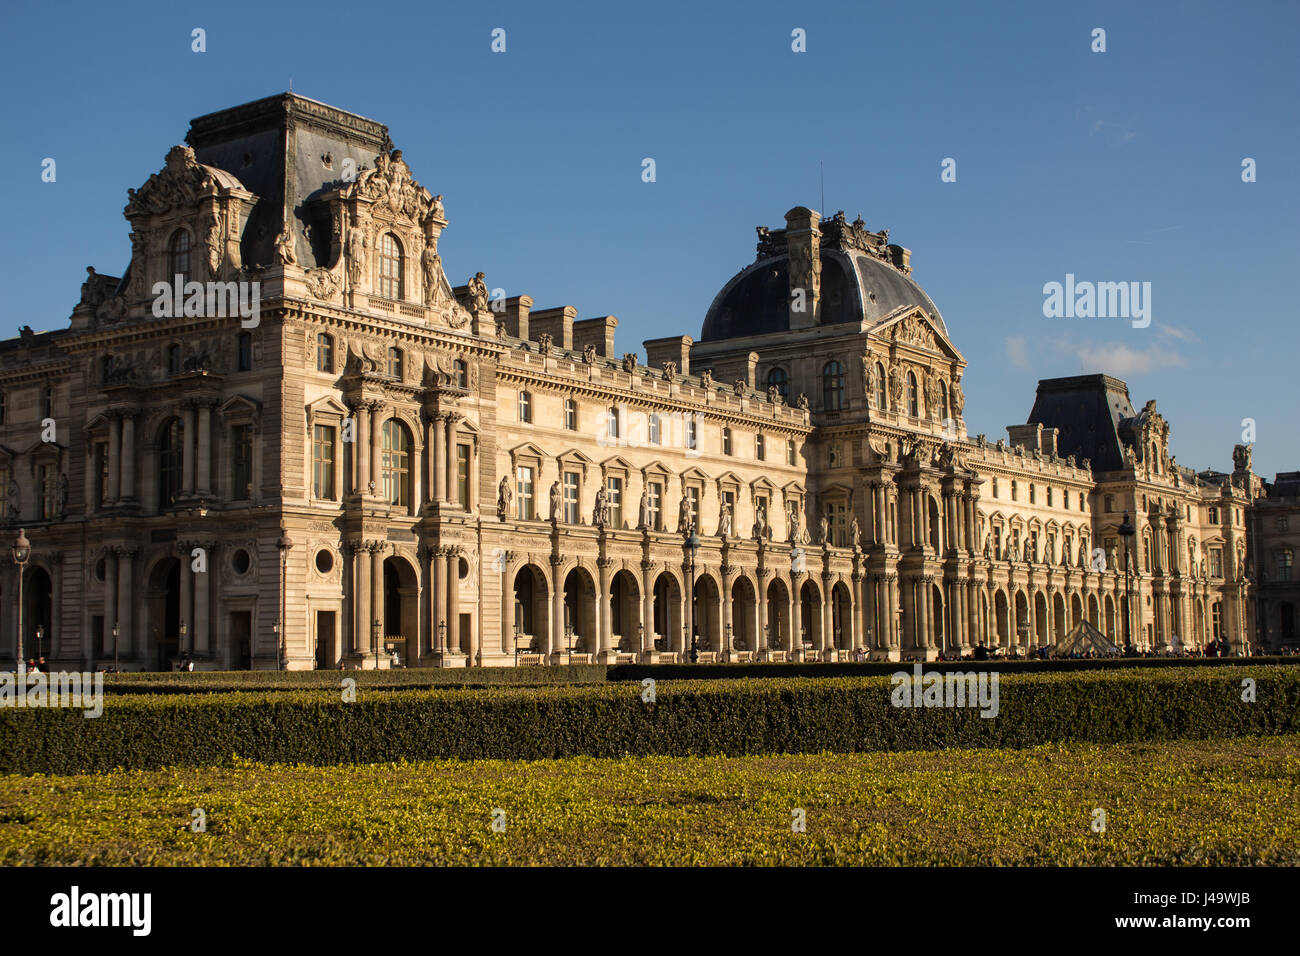 Jardins, sculptures et pyramide du louvre a Paris en france un jour de soleil Stock Photo